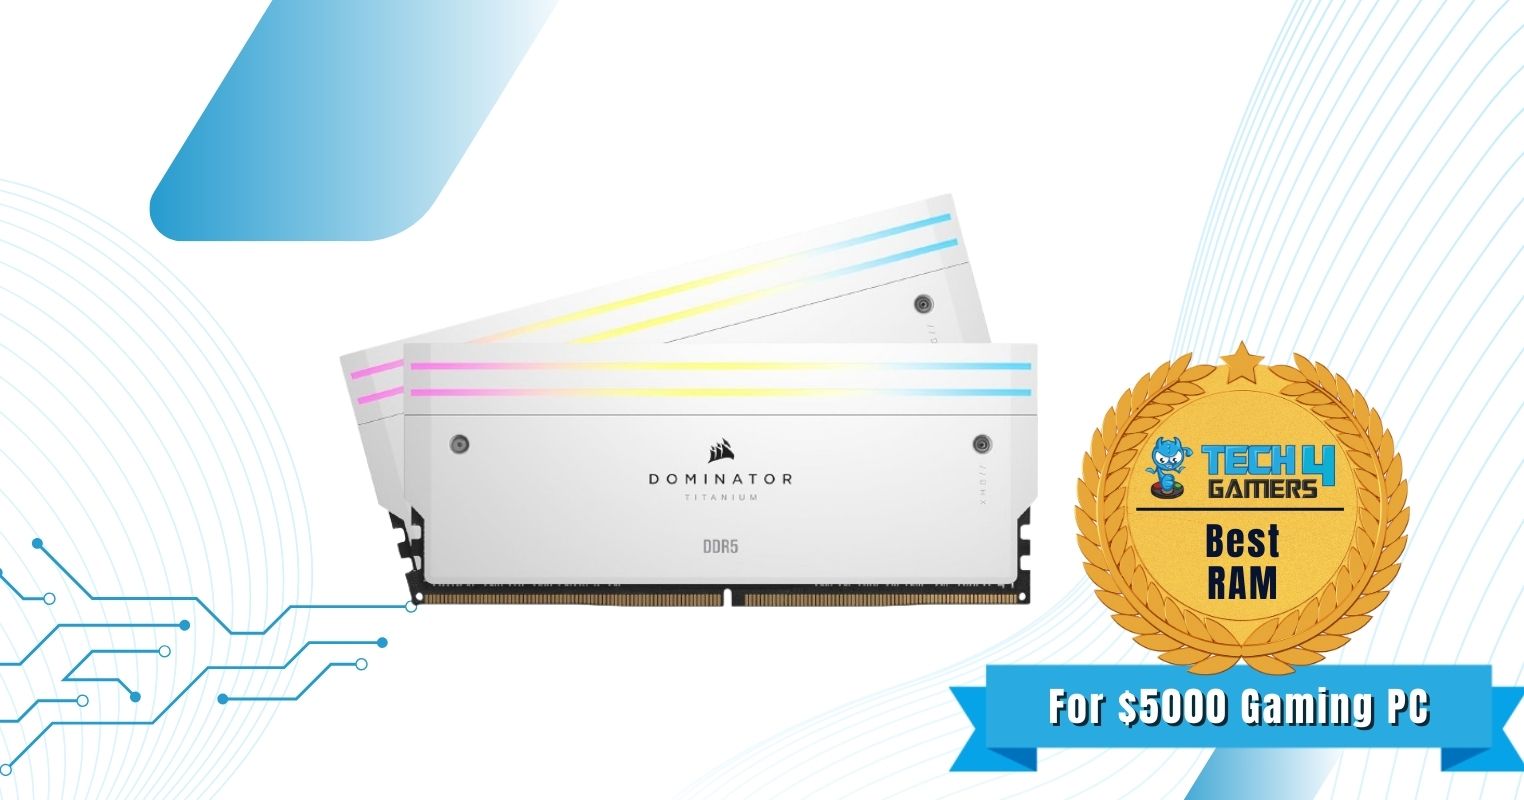 Corsair Dominator Titanium DDR5-7200 2x16GB 32GB C34 - Best RAM For Gaming PC Under $5000